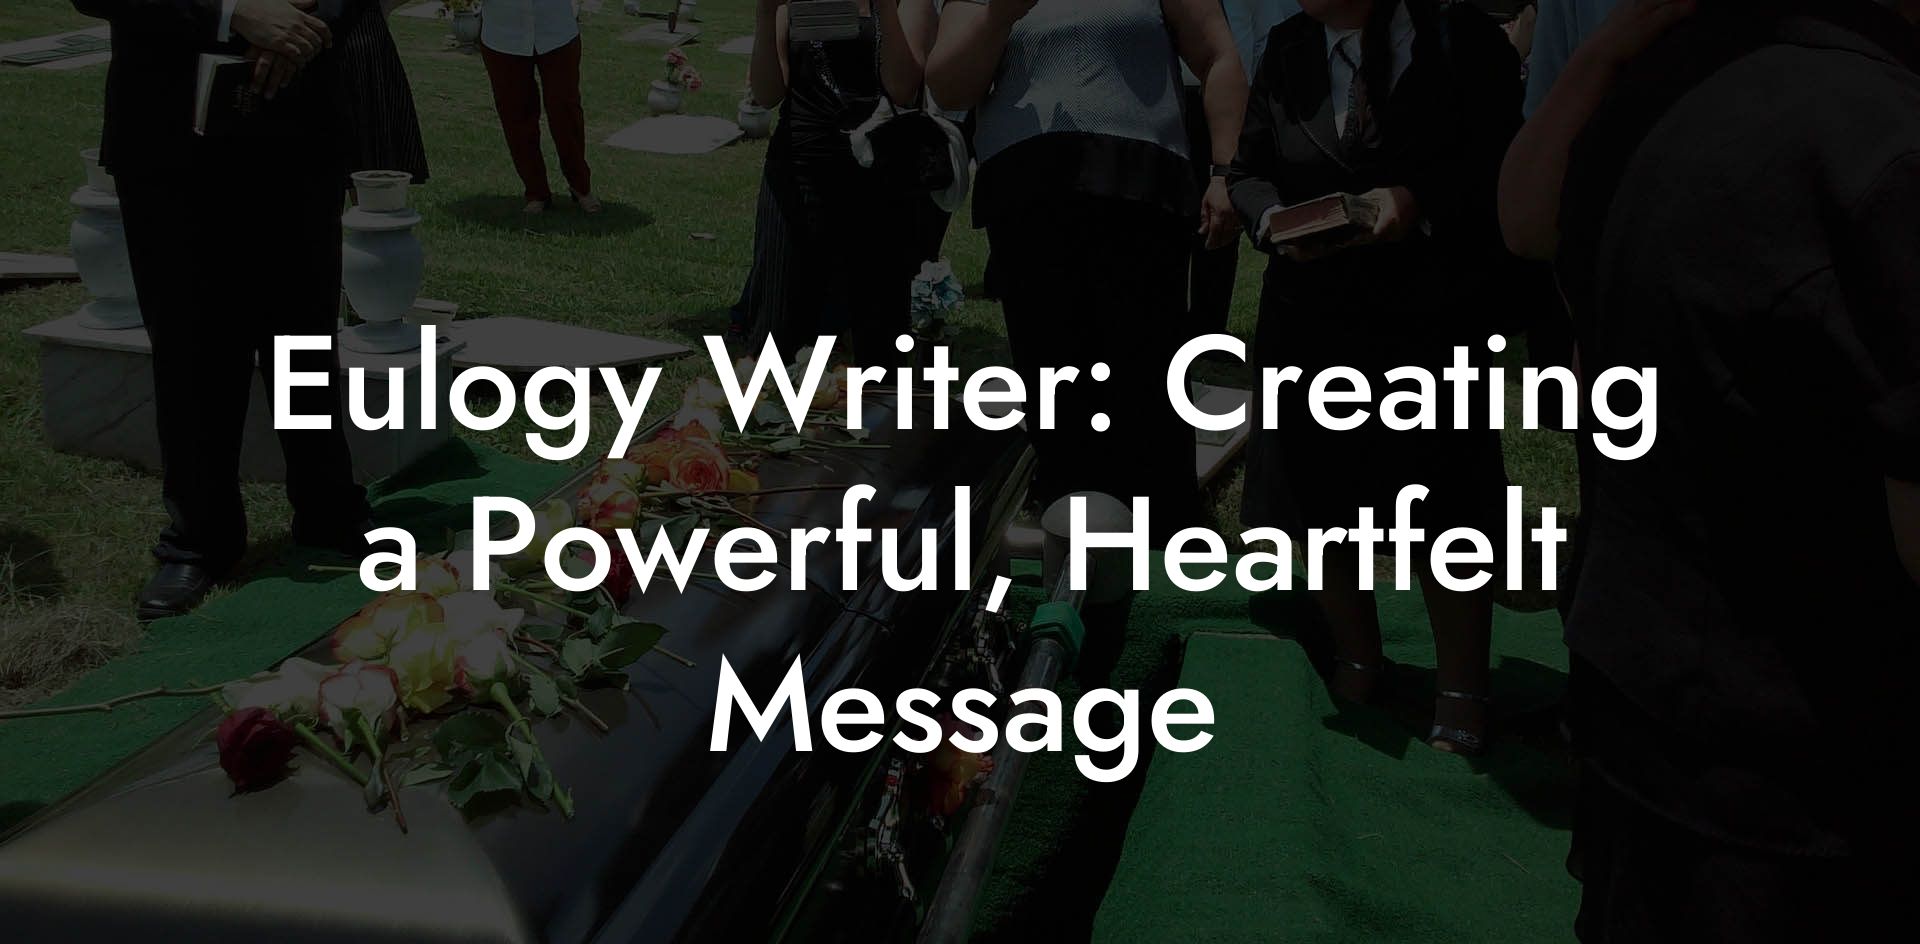 Eulogy Writer: Creating a Powerful, Heartfelt Message